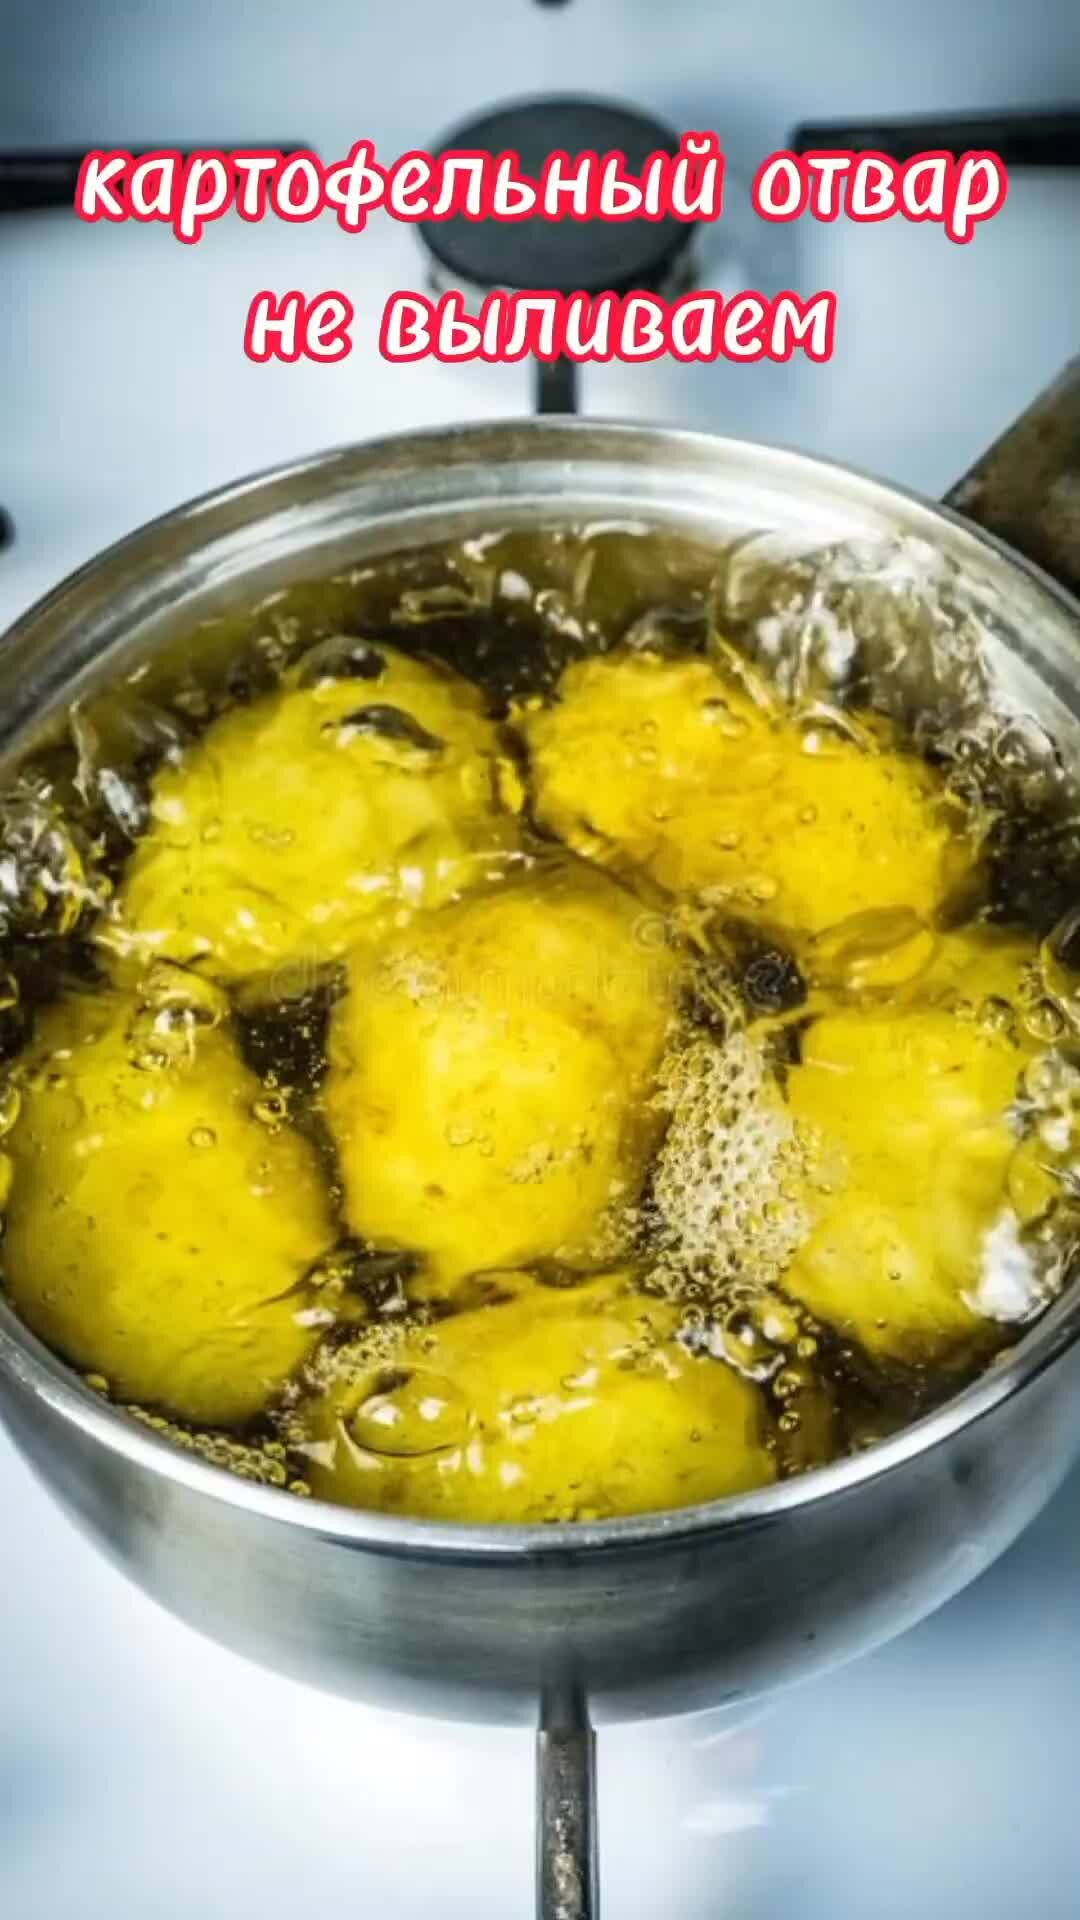 Картошку варят в кипящей. Картофель в кипящей воде. Картофель в кастрюле. Закипевшая картошка. Картошка варится в воде.